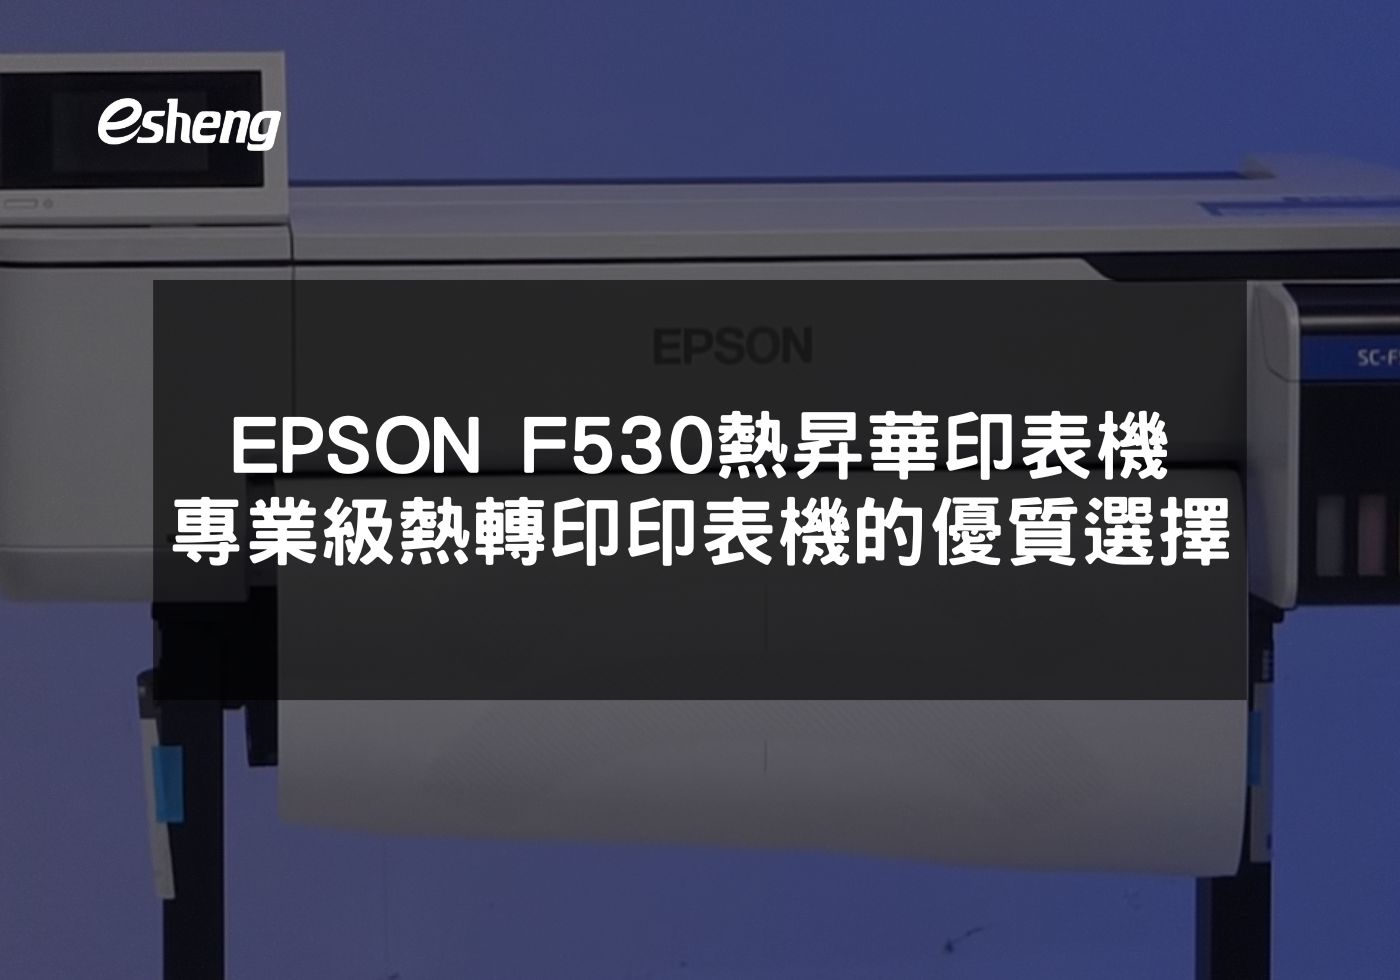 EPSON F530專業級熱昇華印表機的創新特色